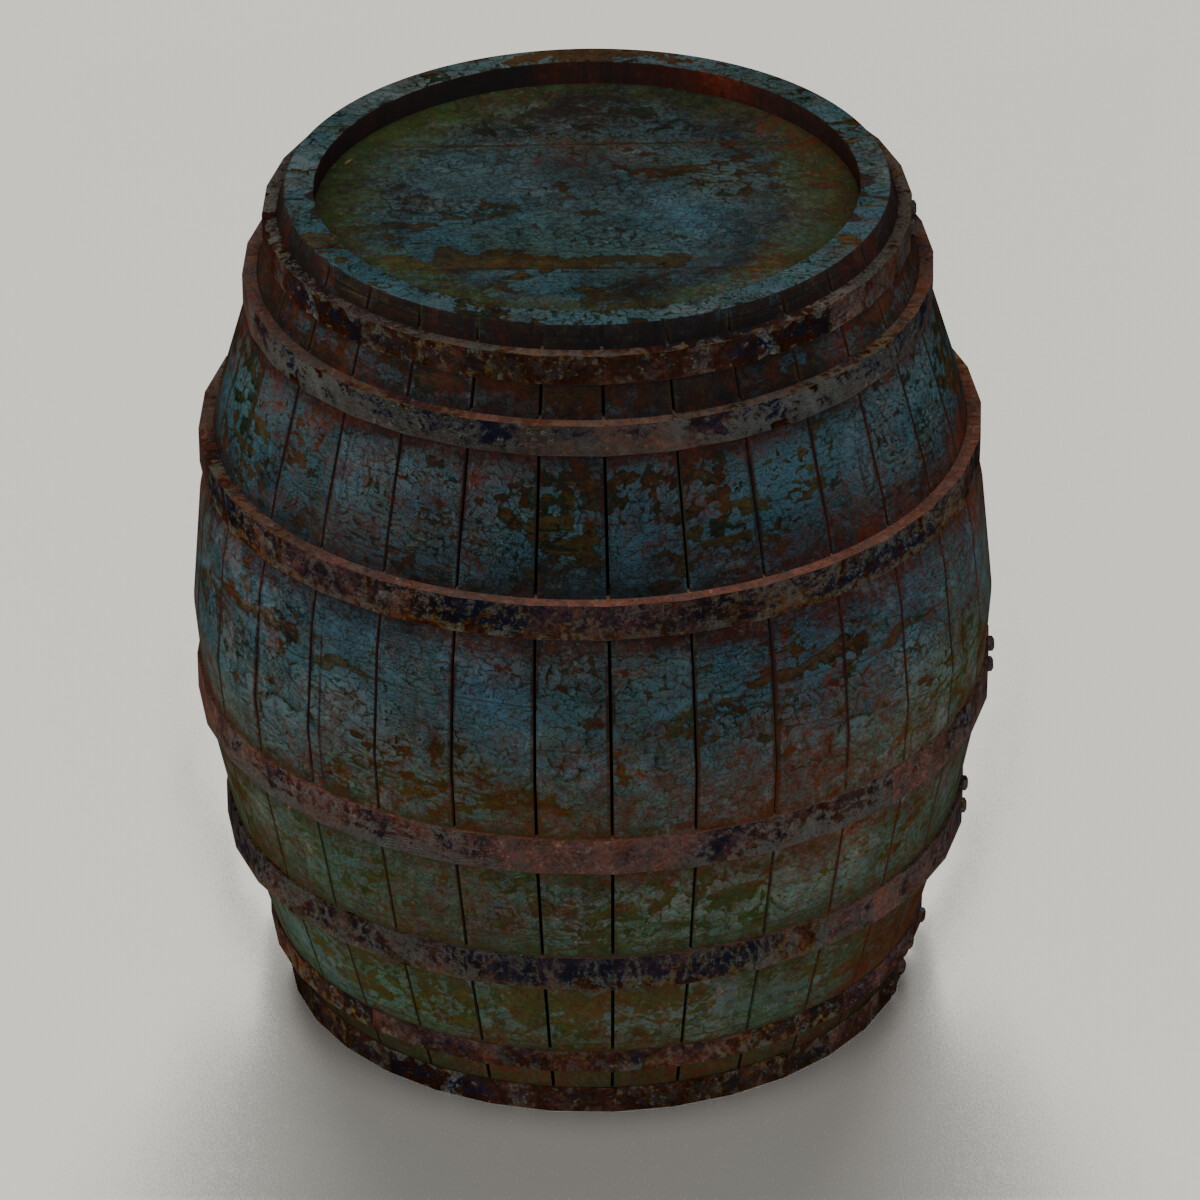 Hobo barrel rust фото 110